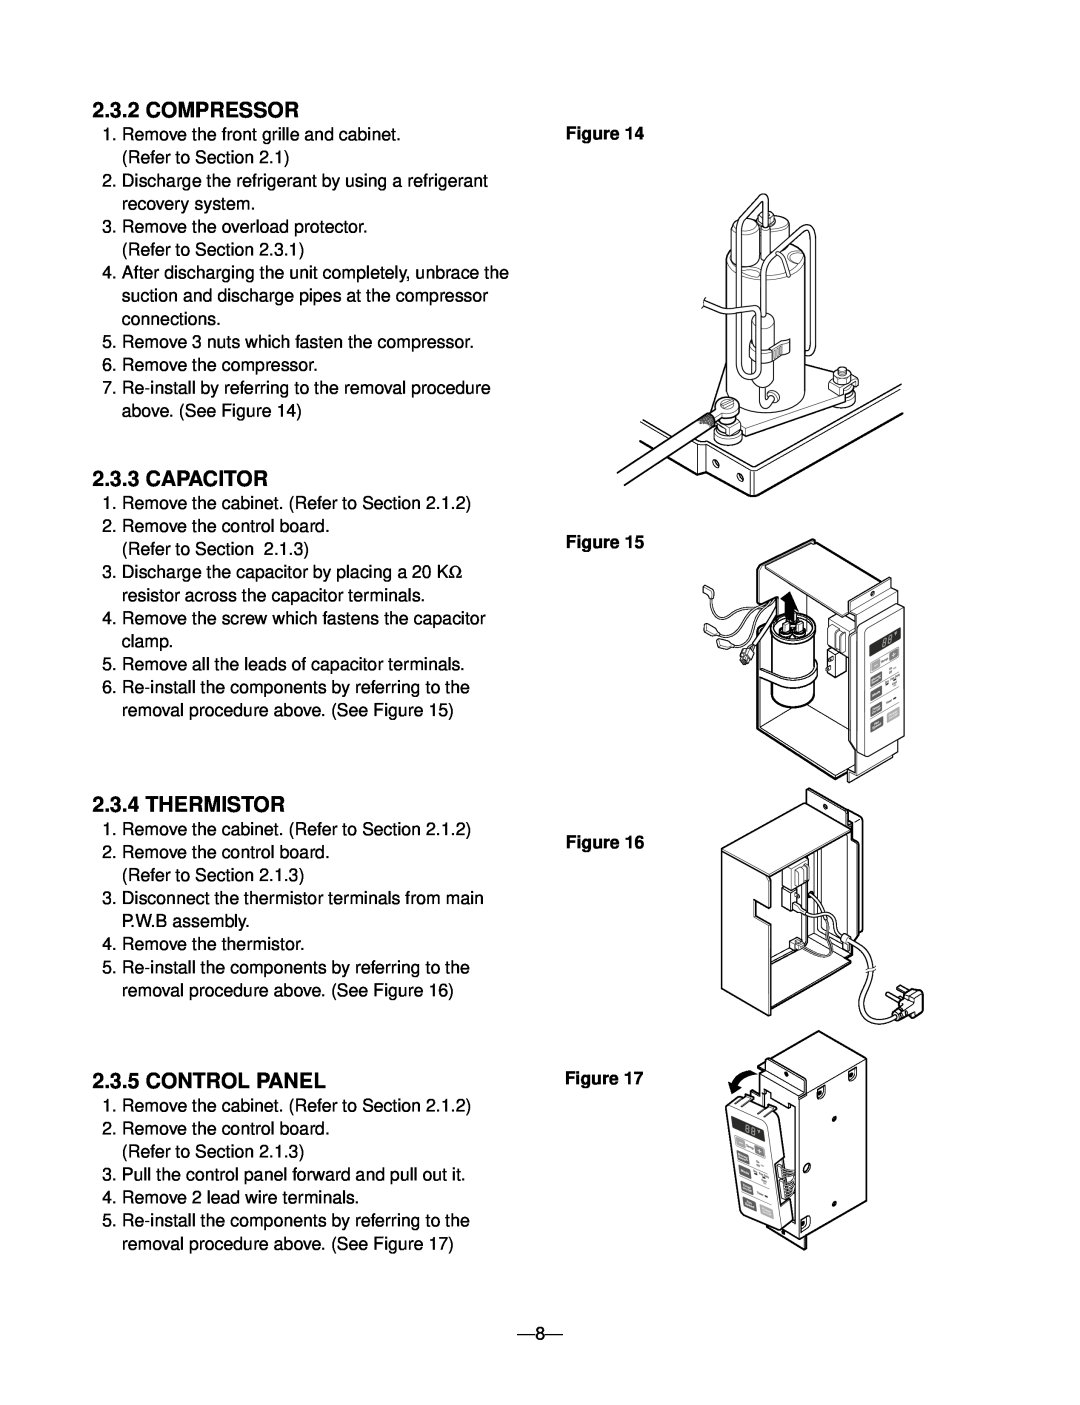 Friedrich KP05A10 KP06A10 manual Compressor, Capacitor, Thermistor, Control Panel, Figure Figure 